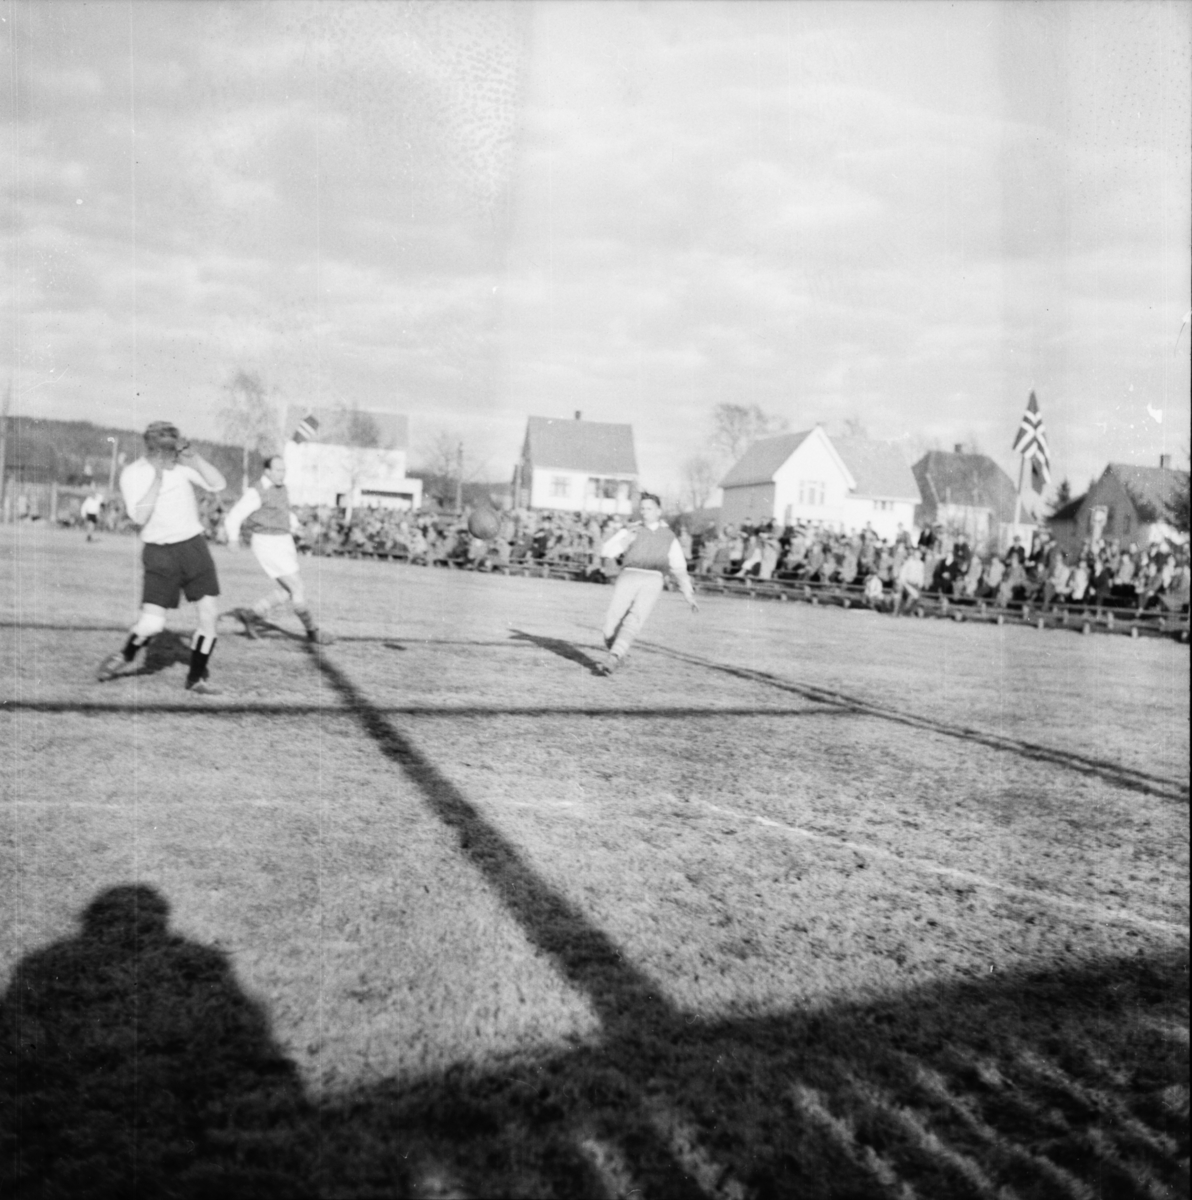 Vardens arkiv. "Fotballkamp. Odd - Storm 1-0, Kleiva" 24.04.1954